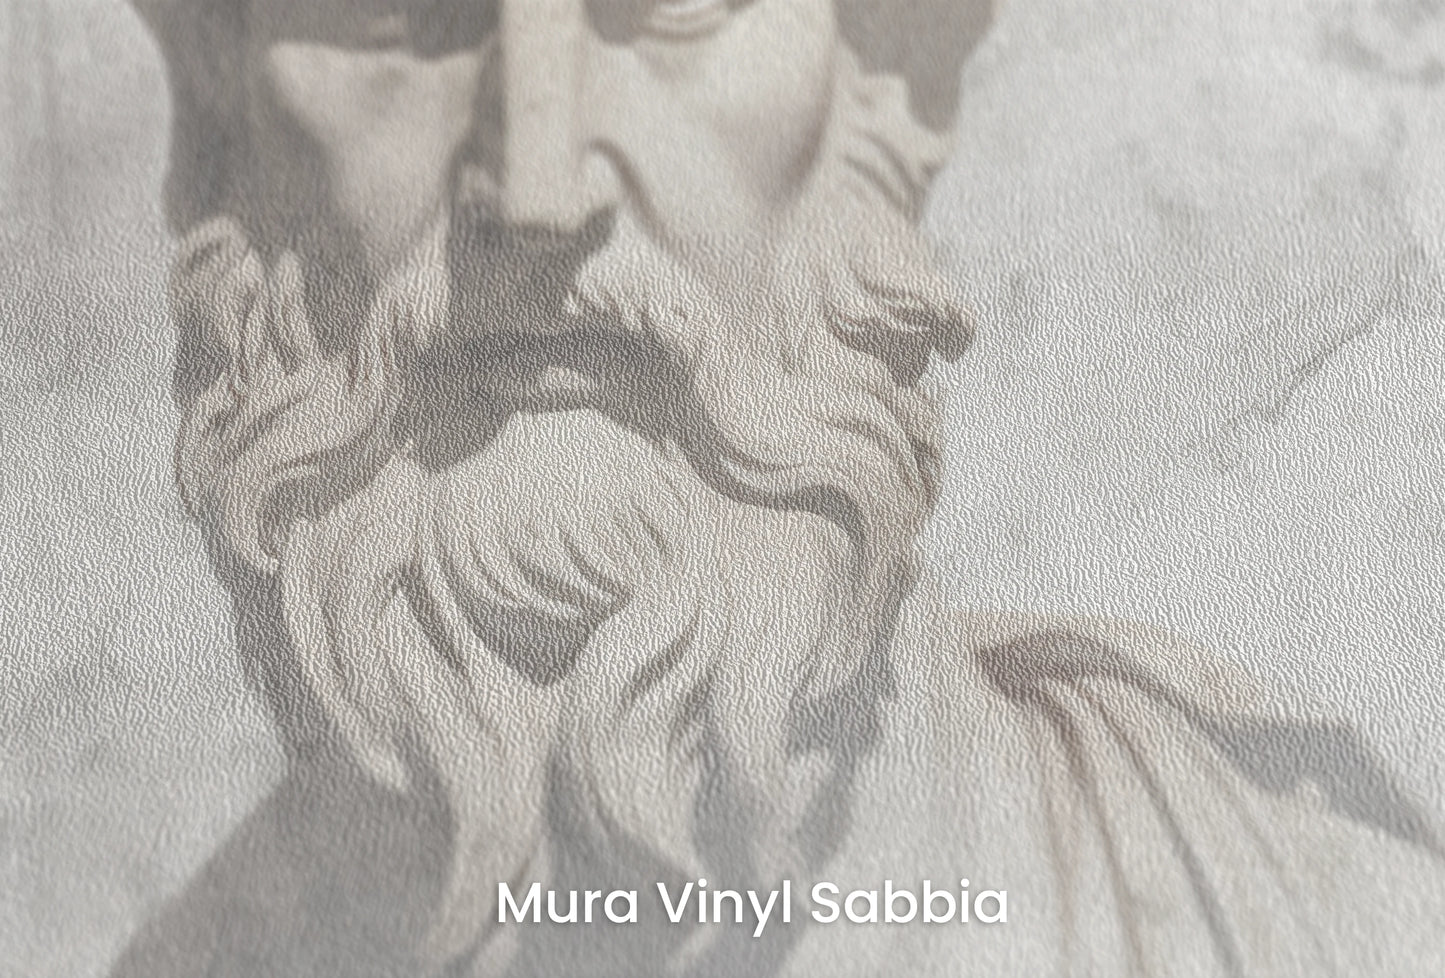 Zbliżenie na artystyczną fototapetę o nazwie Zeus's Deliberation na podłożu Mura Vinyl Sabbia struktura grubego ziarna piasku.